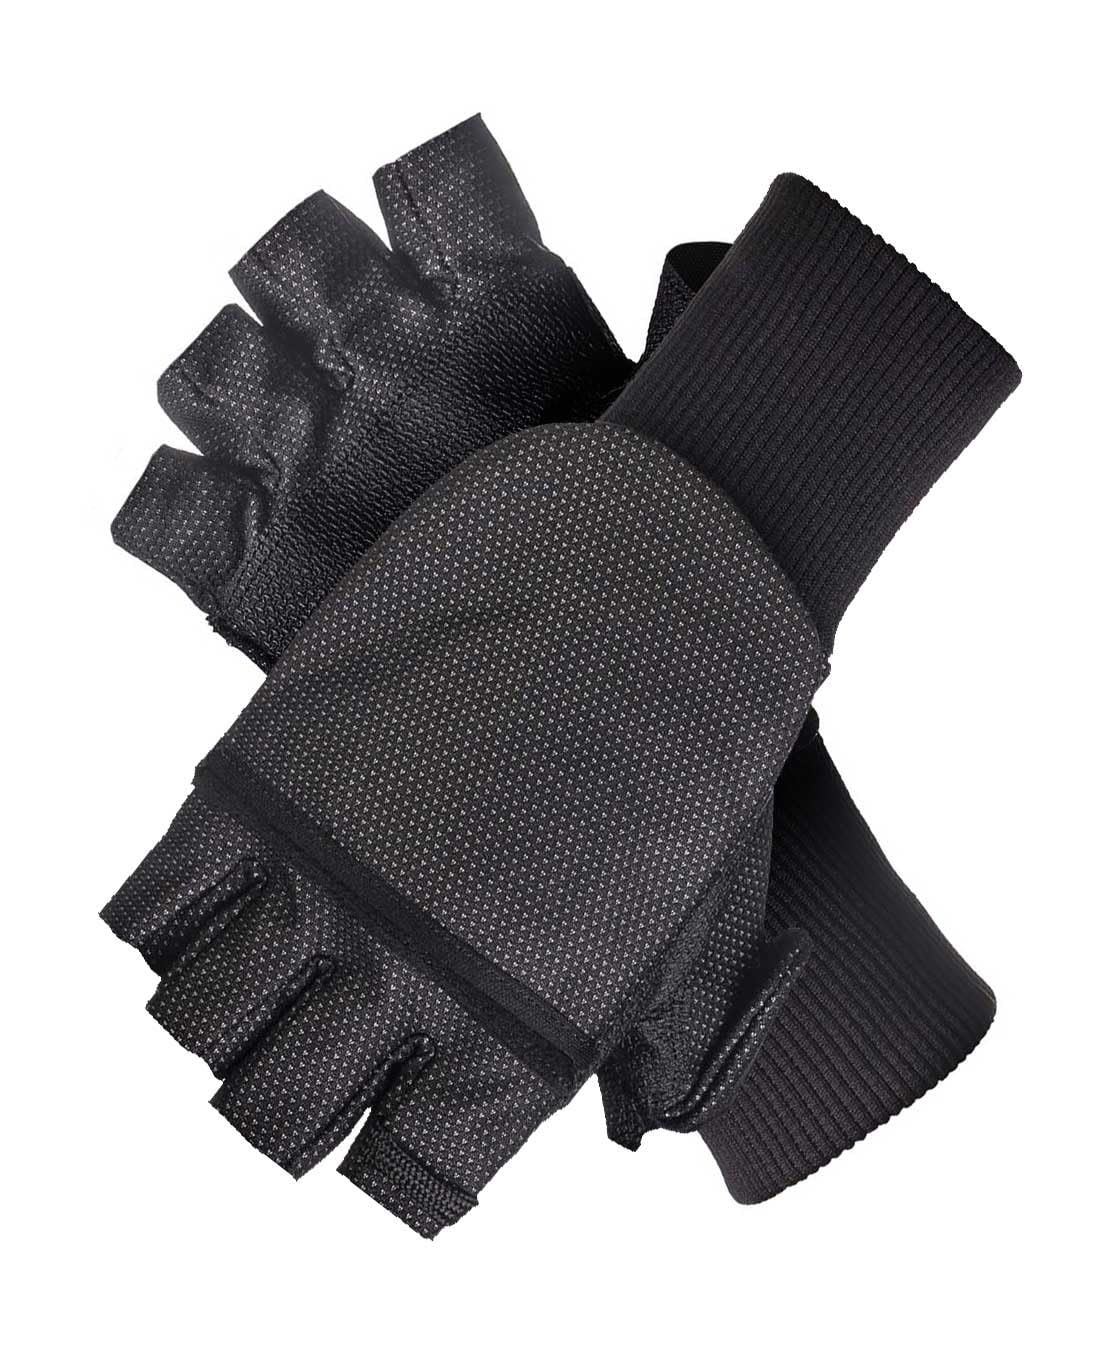 MOG Masters of Gloves Duoflex 2in1 Einsatz-Handschuh, Winddicht und wasserabweisend mit Flexibler Flappe als Fäustling oder fingerloser Handschuh nutzbar